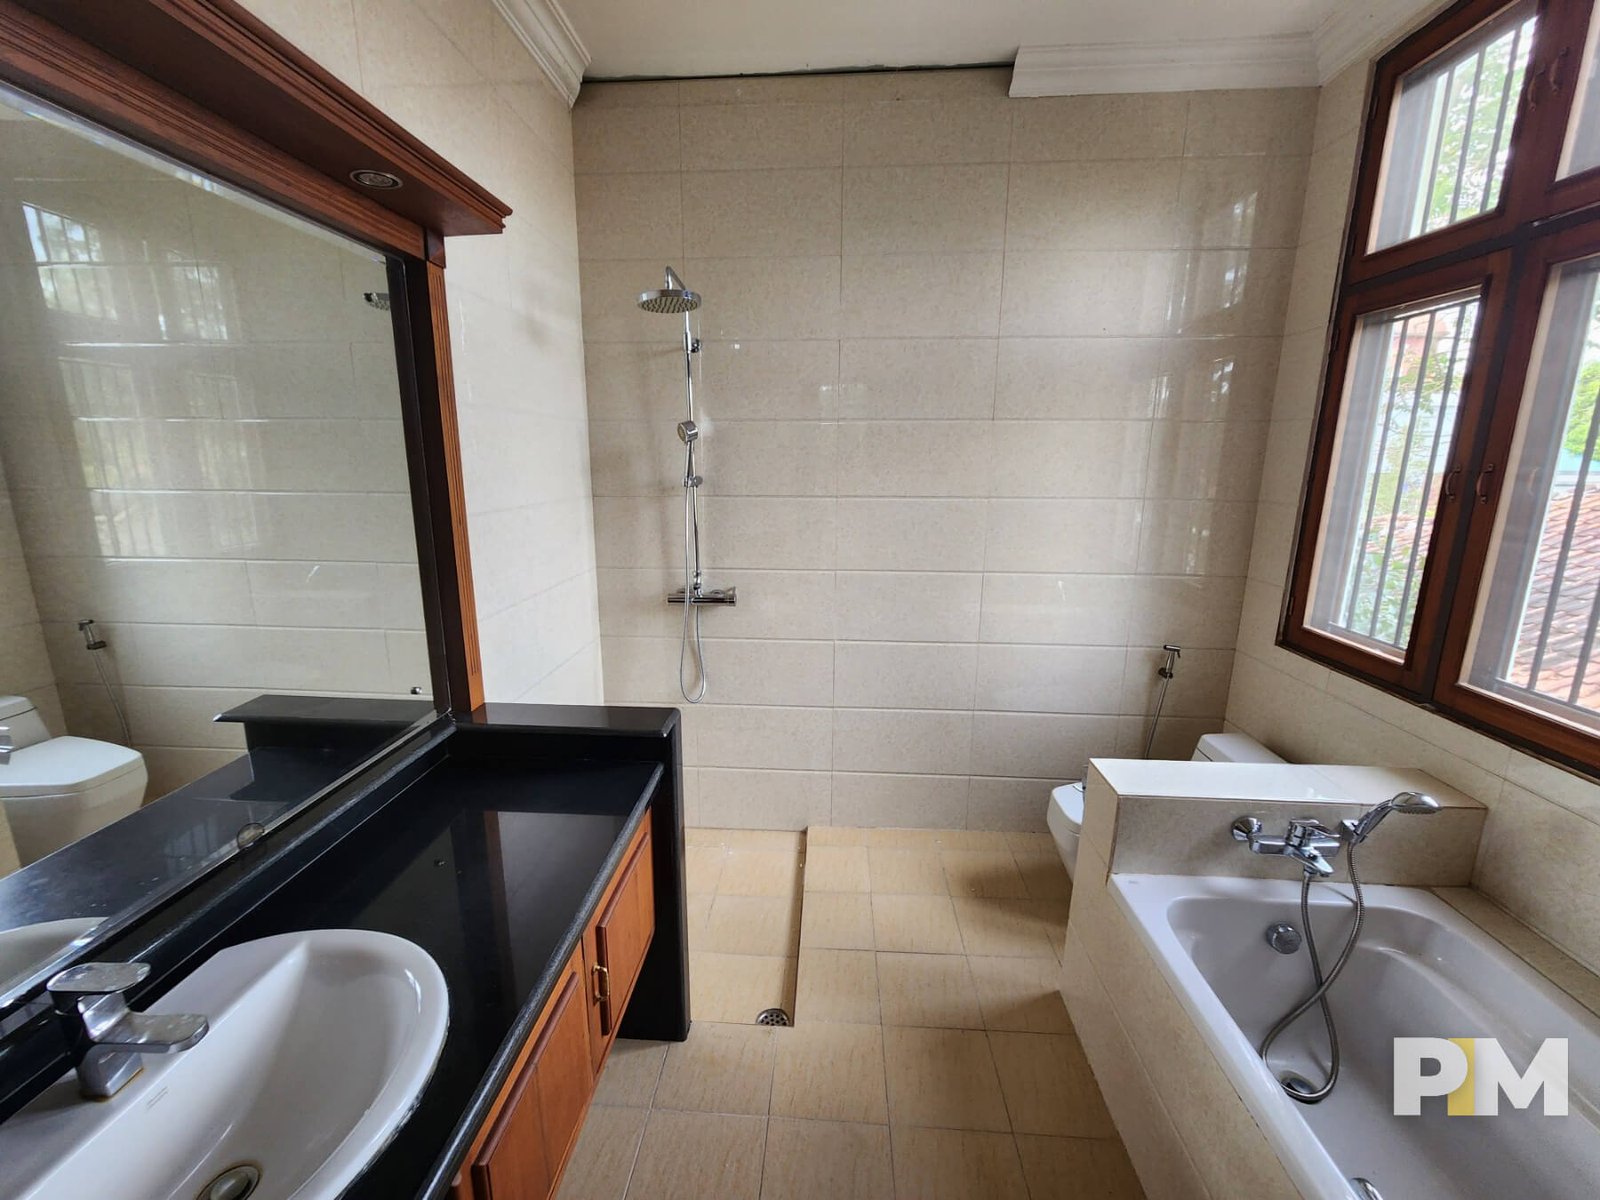 Bathroom with bath tub - Yangon Real Estate